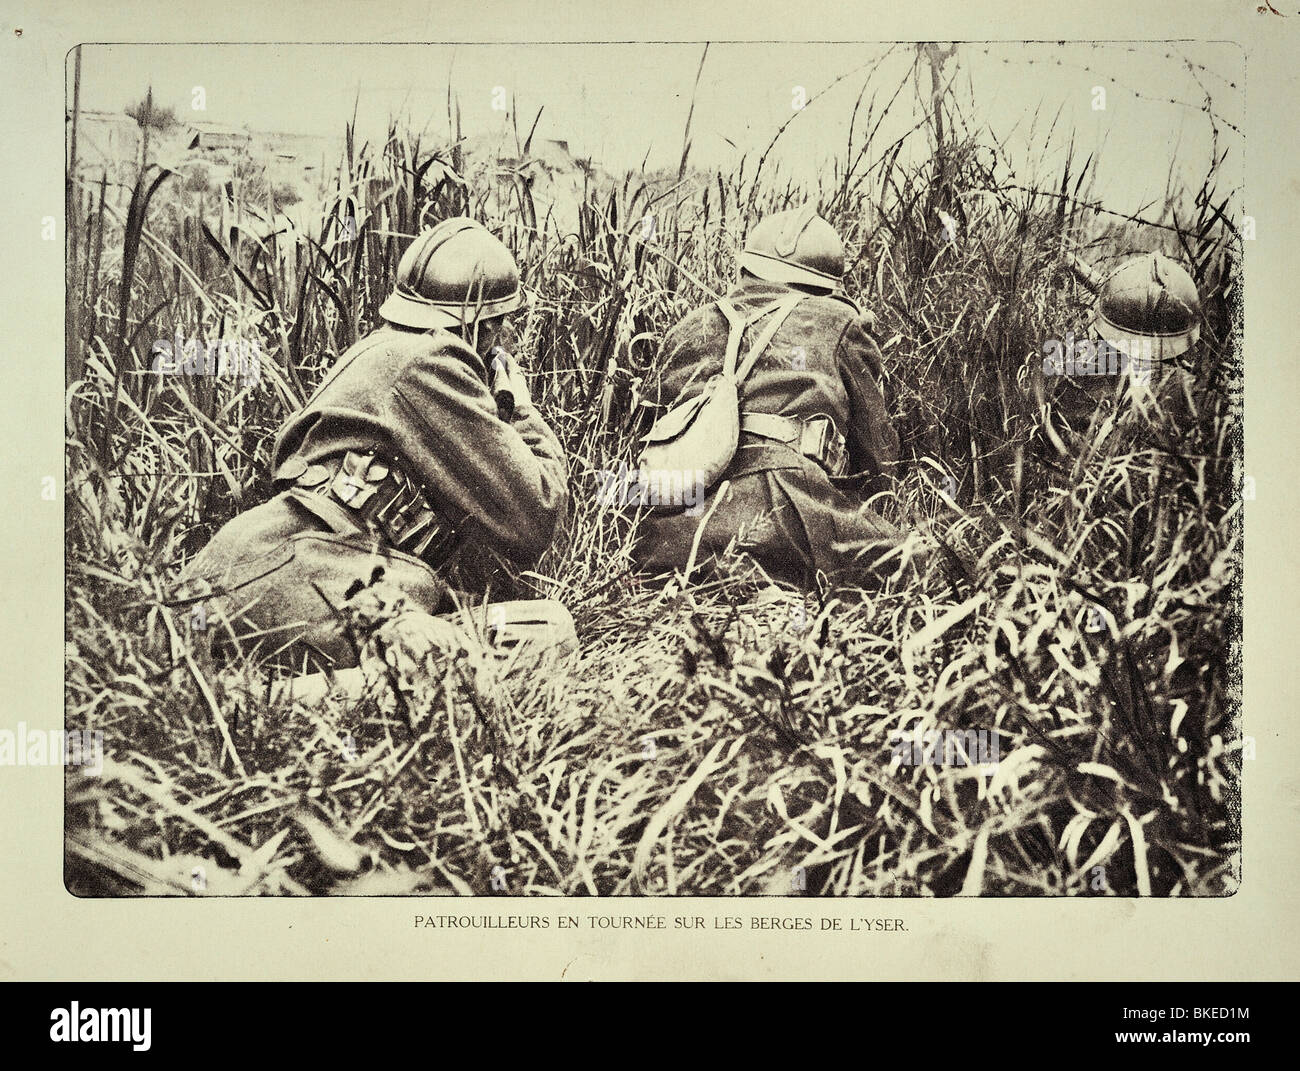 Les soldats de la PREMIÈRE GUERRE MONDIALE belge patrouille de reconnaissance sur le long du fleuve Yser / IJzer Flandre occidentale pendant la Première Guerre mondiale, la Belgique Banque D'Images